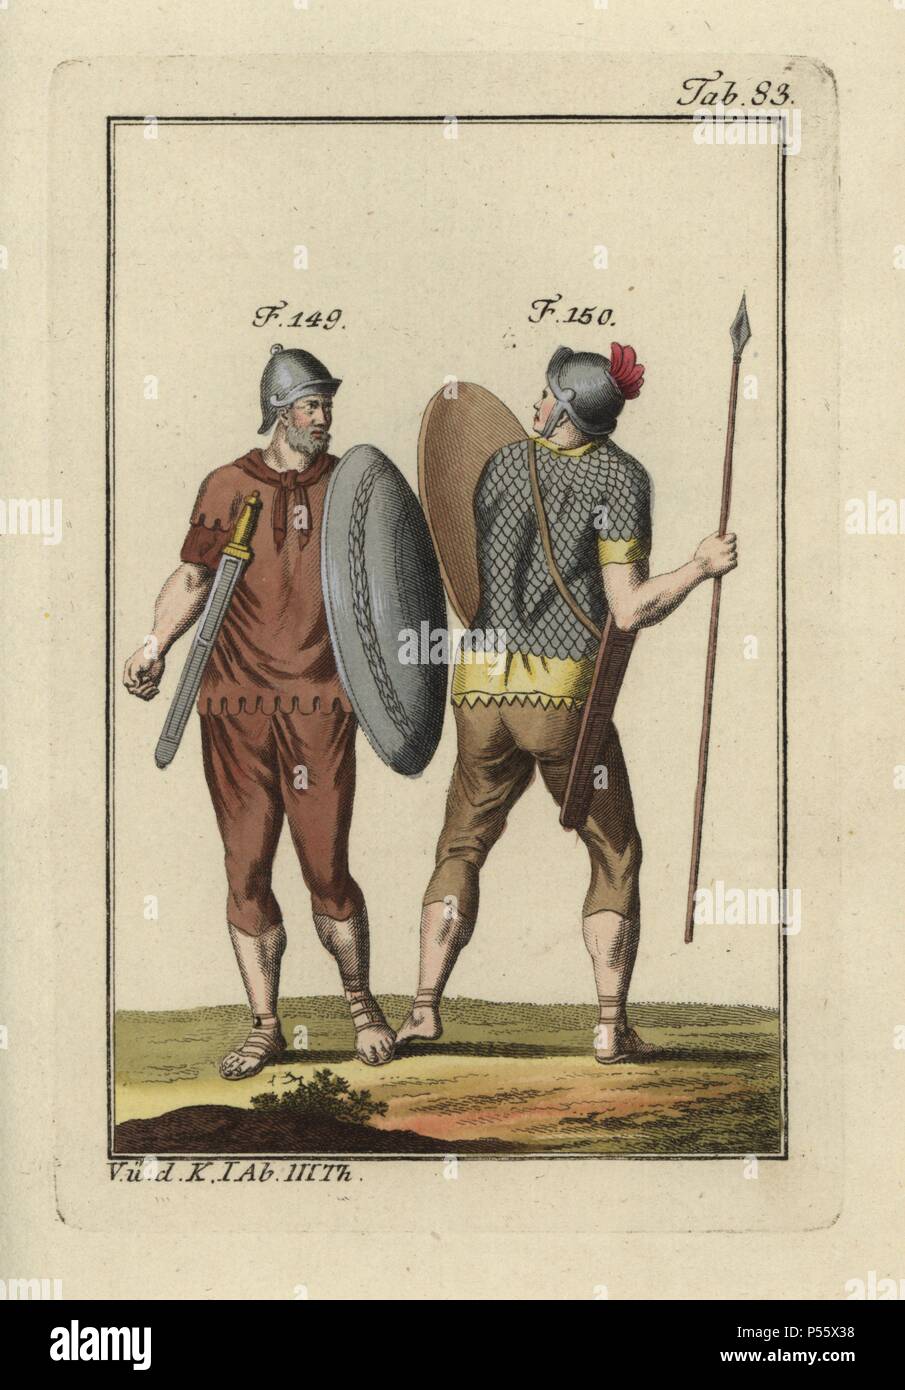 Römische Soldaten mit Schilden, Schwerter, Helme. Die auf der rechten Seite trägt einen Schuppenpanzer Shirt (lorica Squamata) und trägt einen Speer (verutum). Papierkörbe Kupferstich von Robert von Spalart's 'historisches Bild der Kostüme der wichtigsten Menschen der Antike und des Mittelalters" (1798). Stockfoto